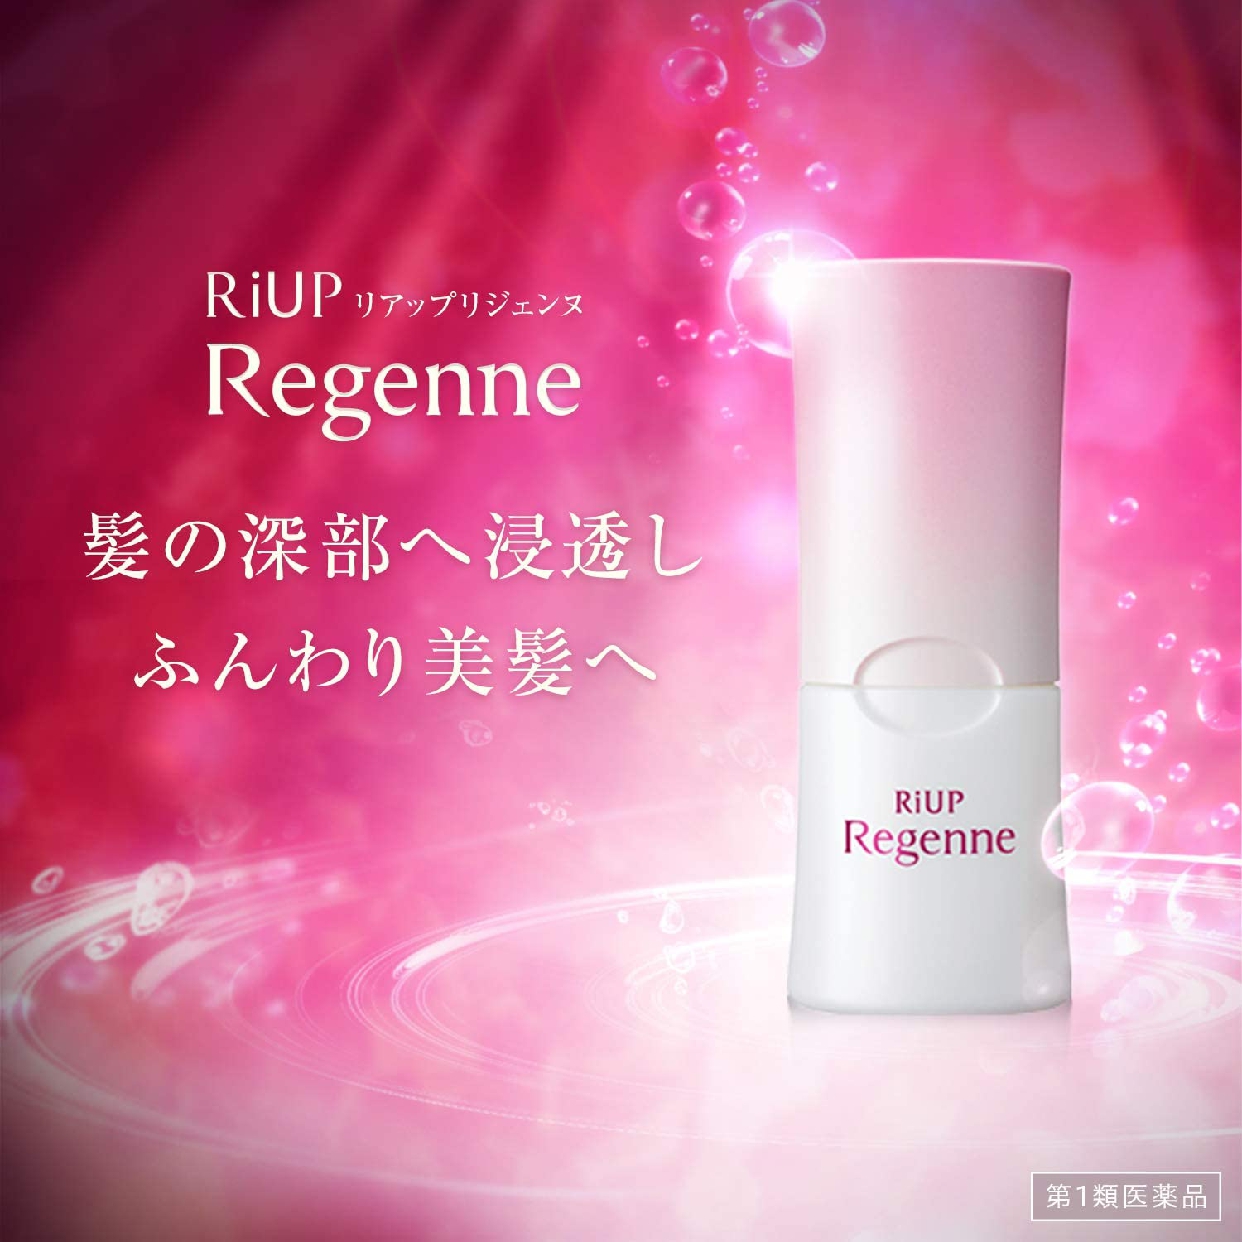 Regenne(リジェンヌ) リアップリジェンヌの商品画像2 